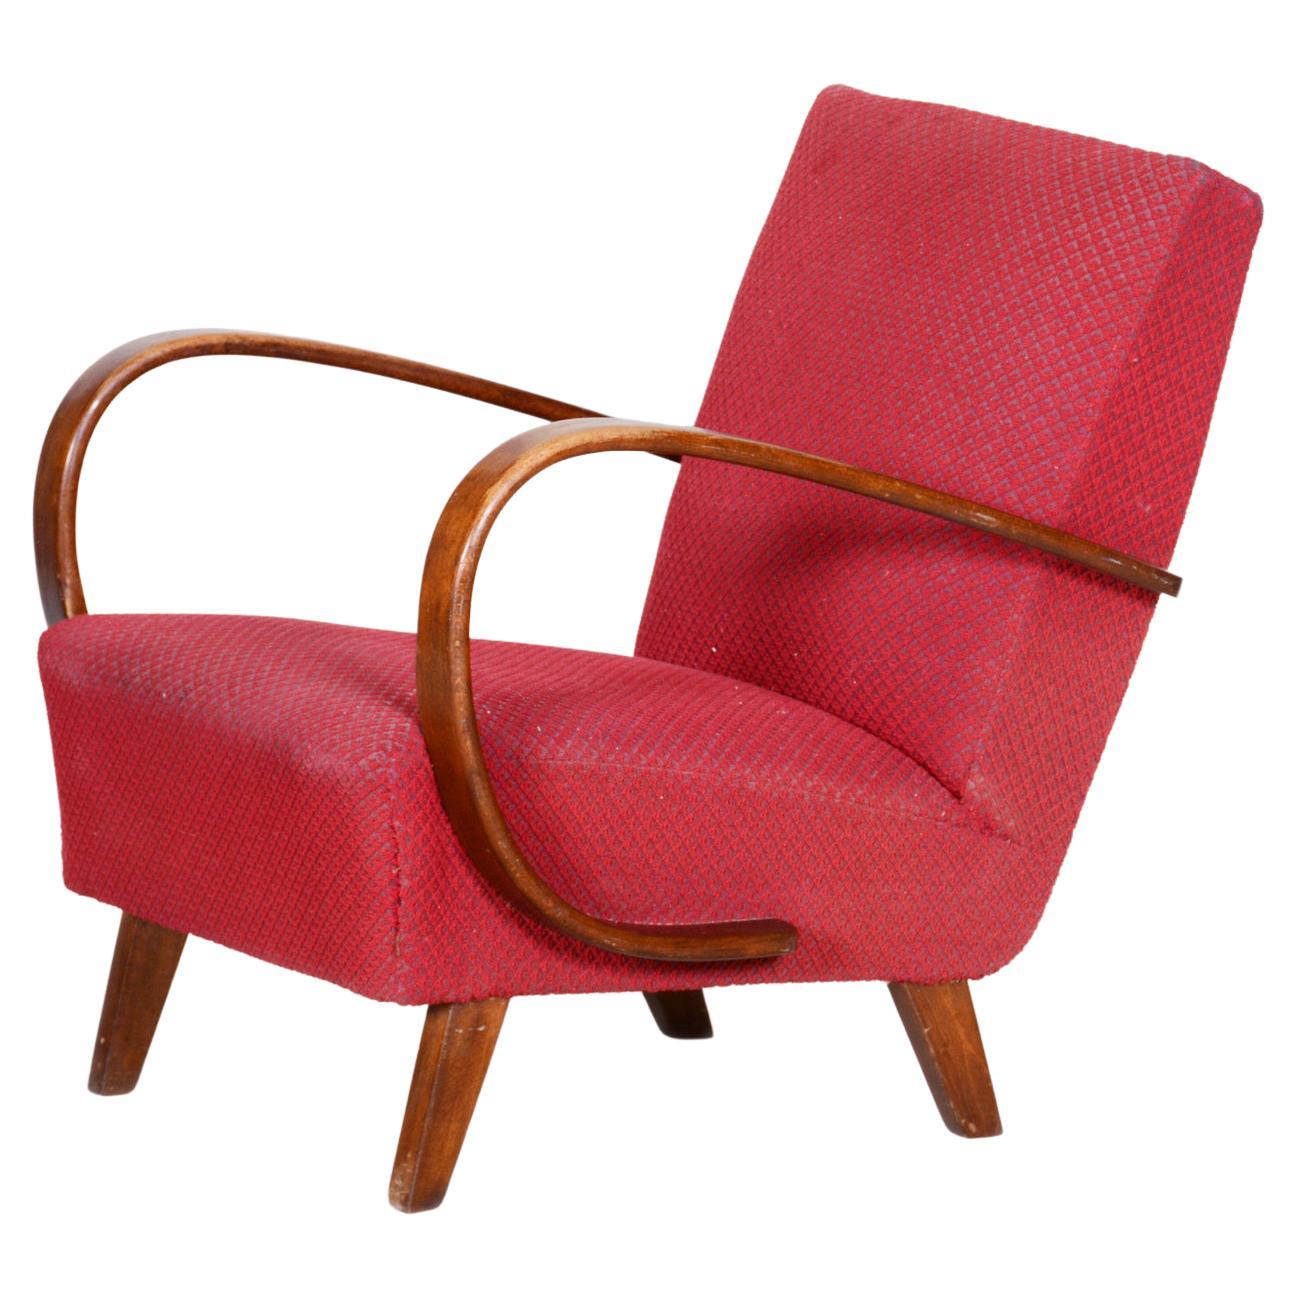 Rote Sessel, hergestellt in Tschechien, 1930er Jahre, Originalzustand, Art-déco-Stil